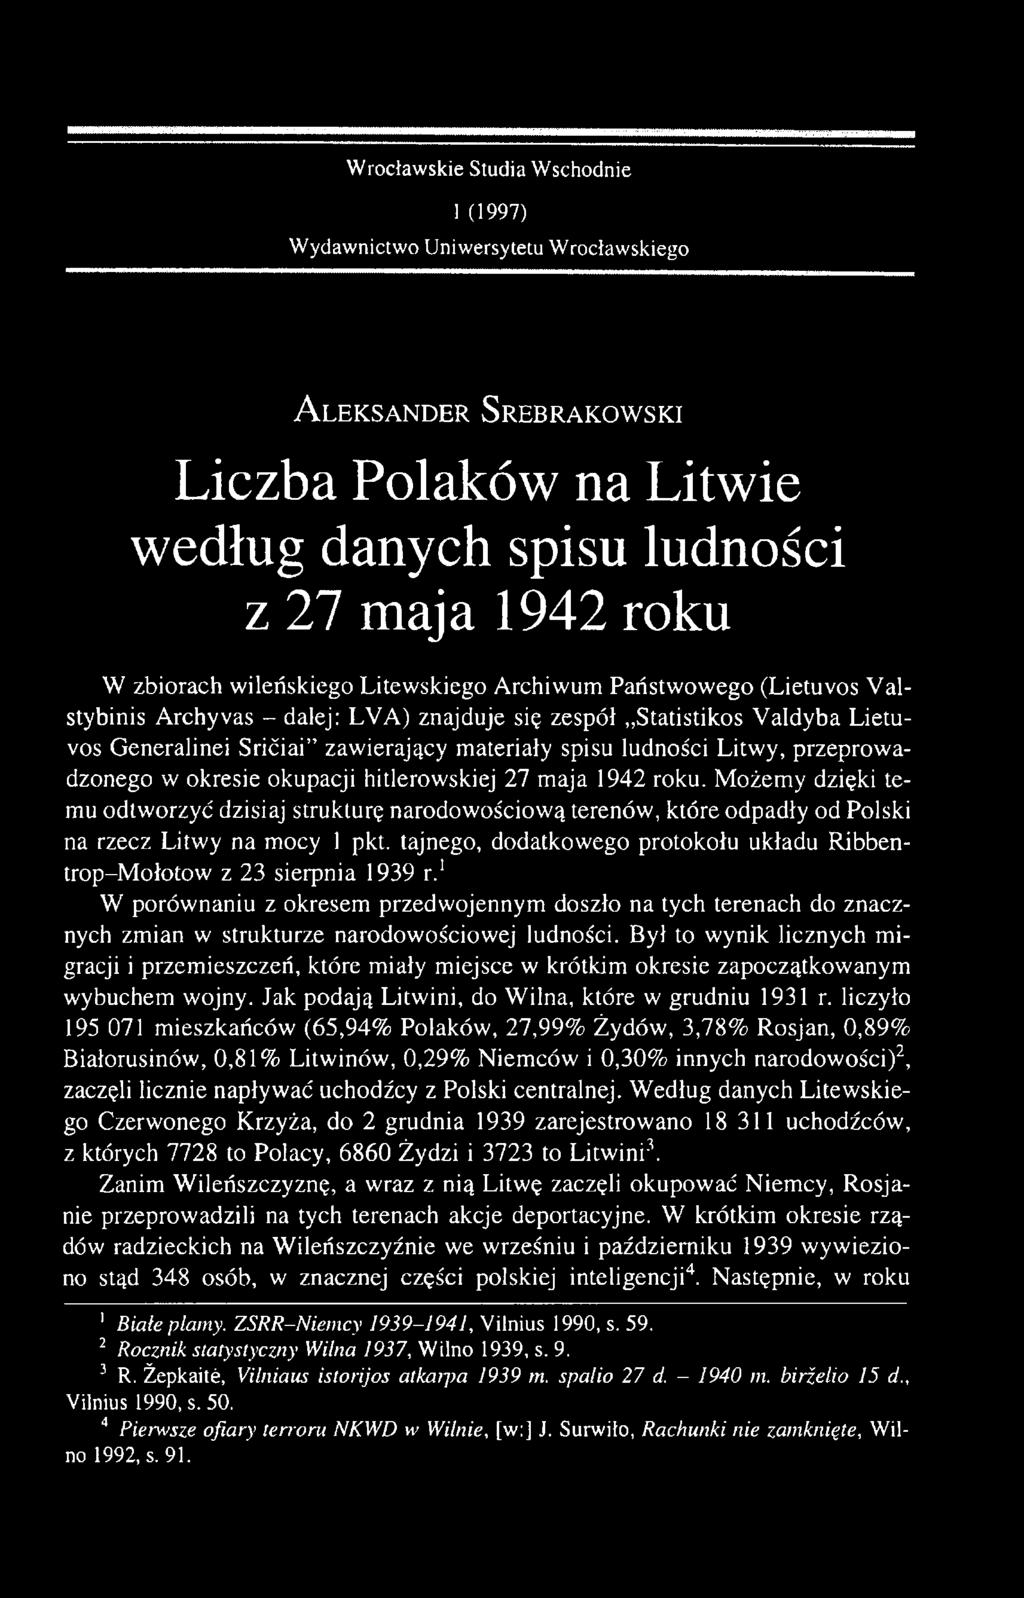 ludności Litwy, przeprowadzonego w okresie okupacji hitlerowskiej 27 maja 1942 roku.